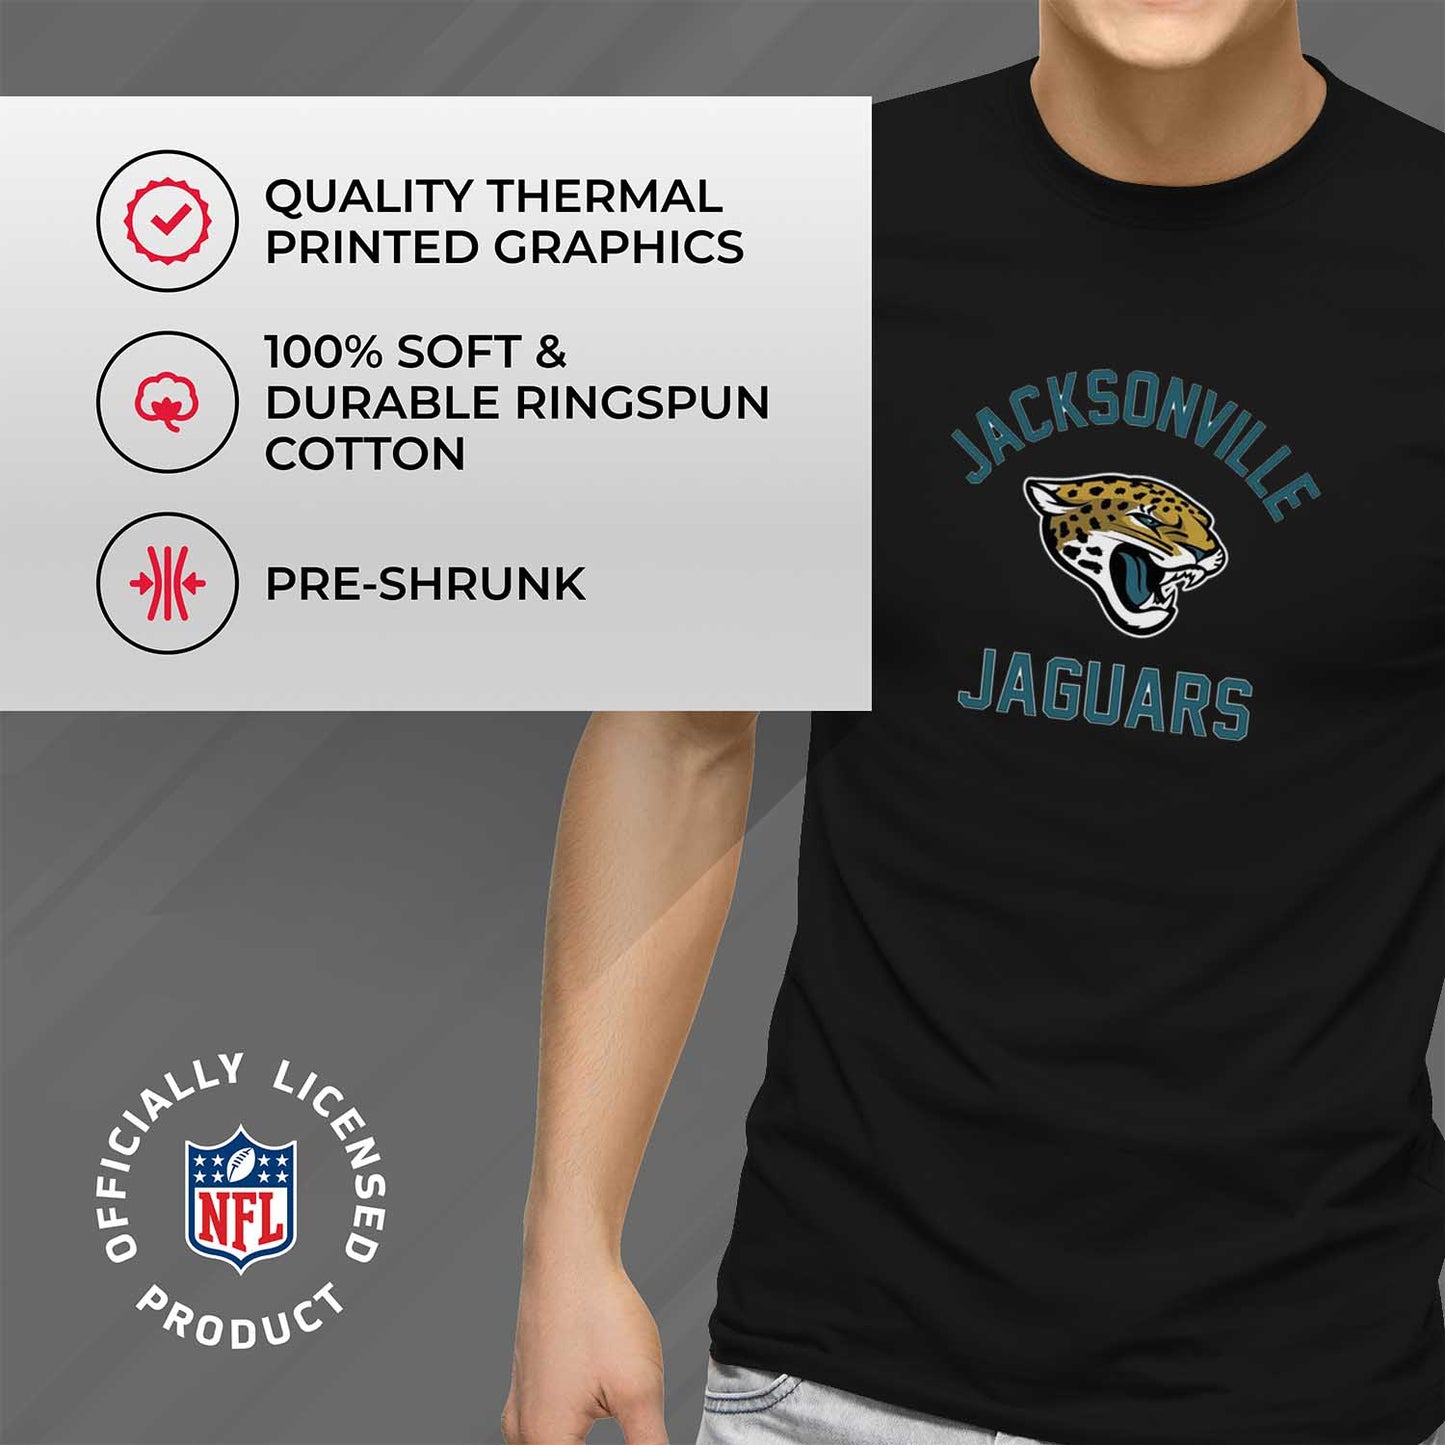 Jacksonville Jaguars NFL Adult Gameday T-Shirt - Black